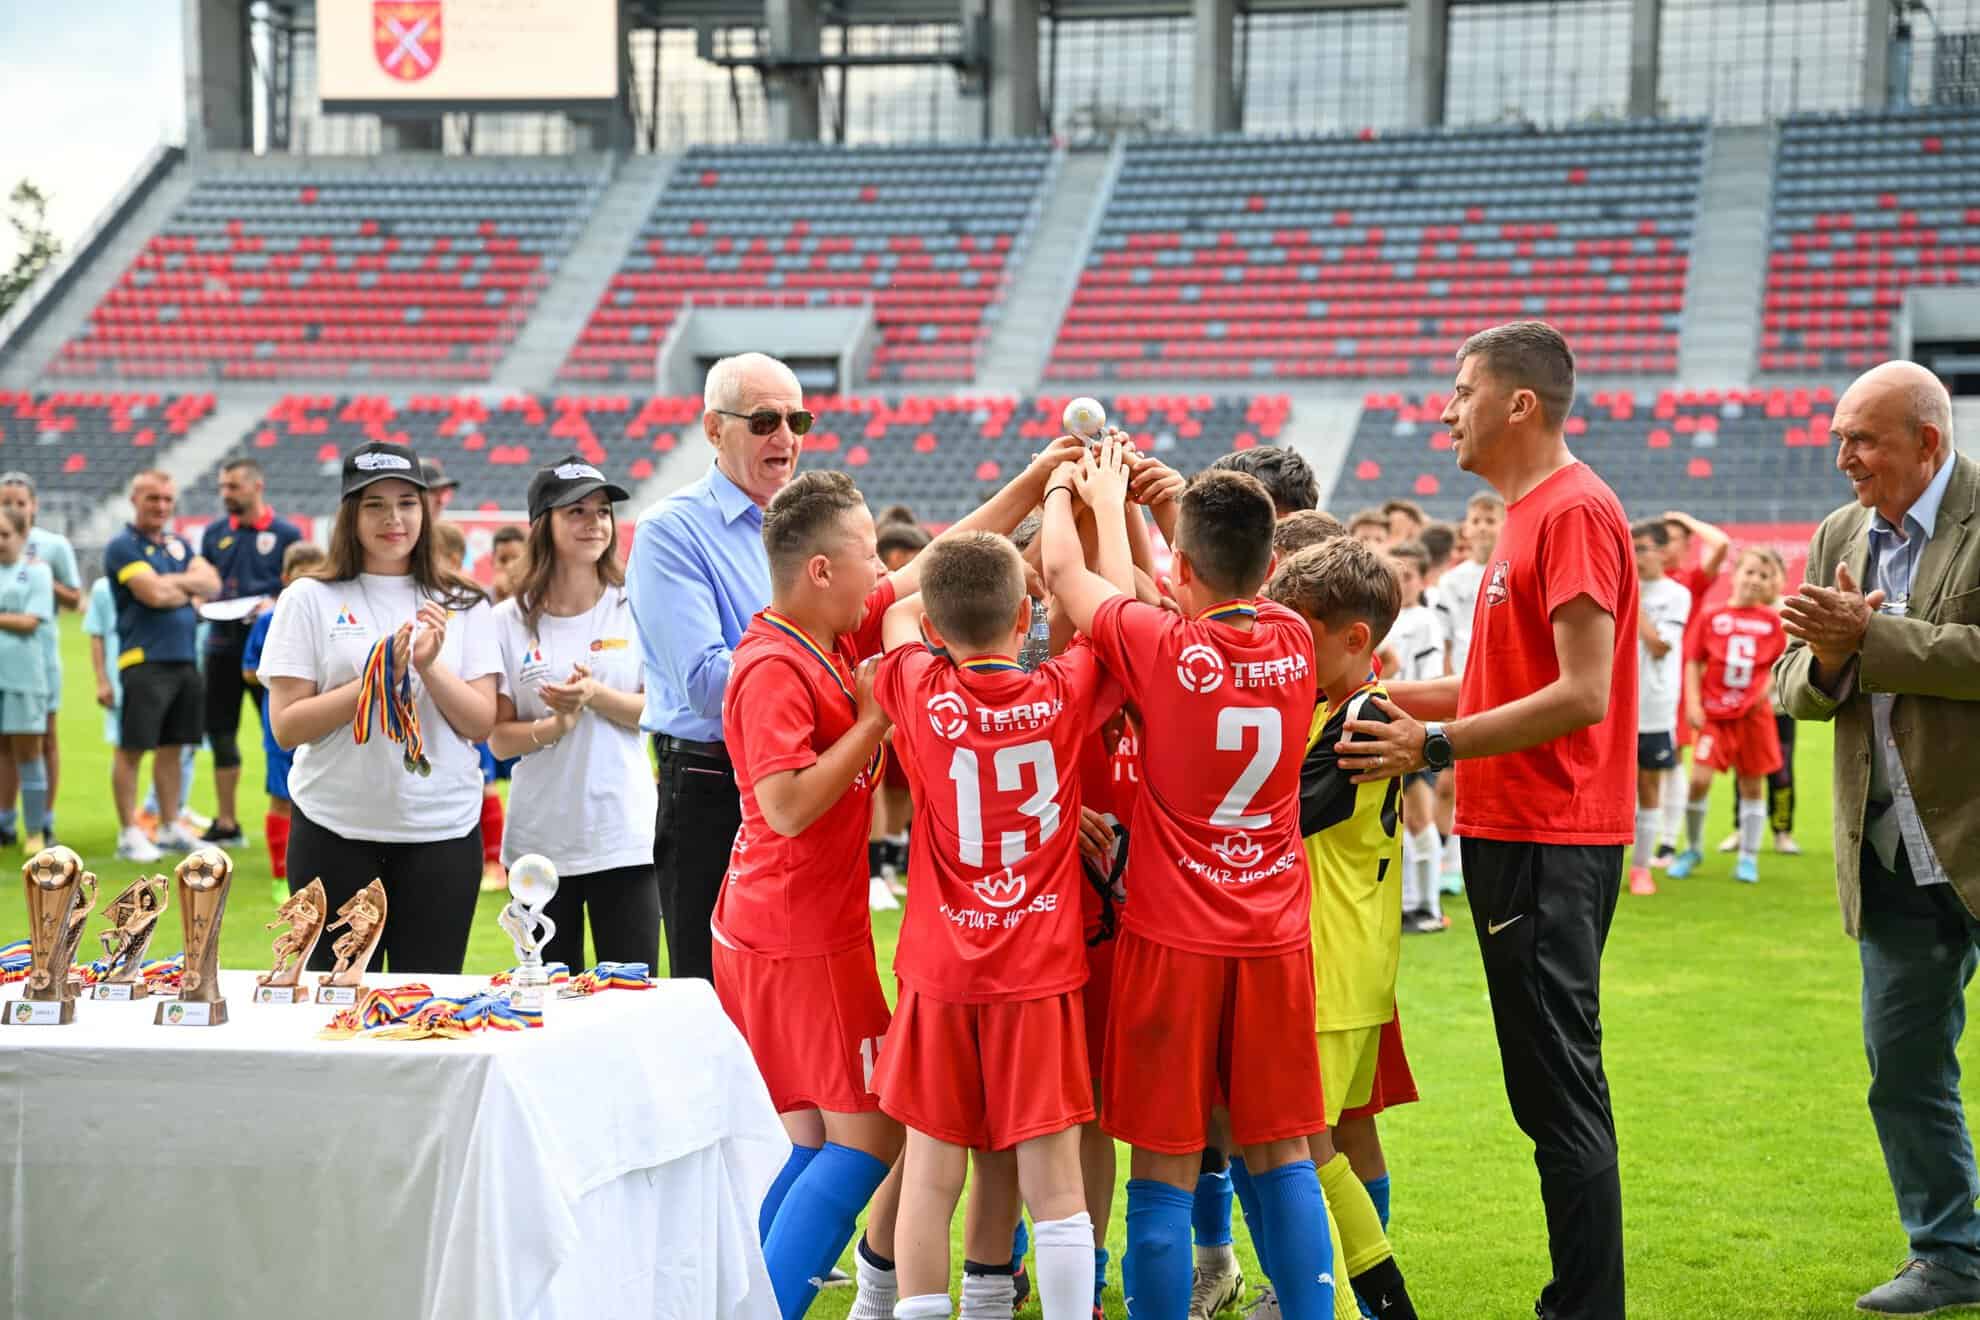 afc interstar și acs alma sibiu, câștigătoare pe ”municipal” la cupa 1 iunie la fotbal (foto)